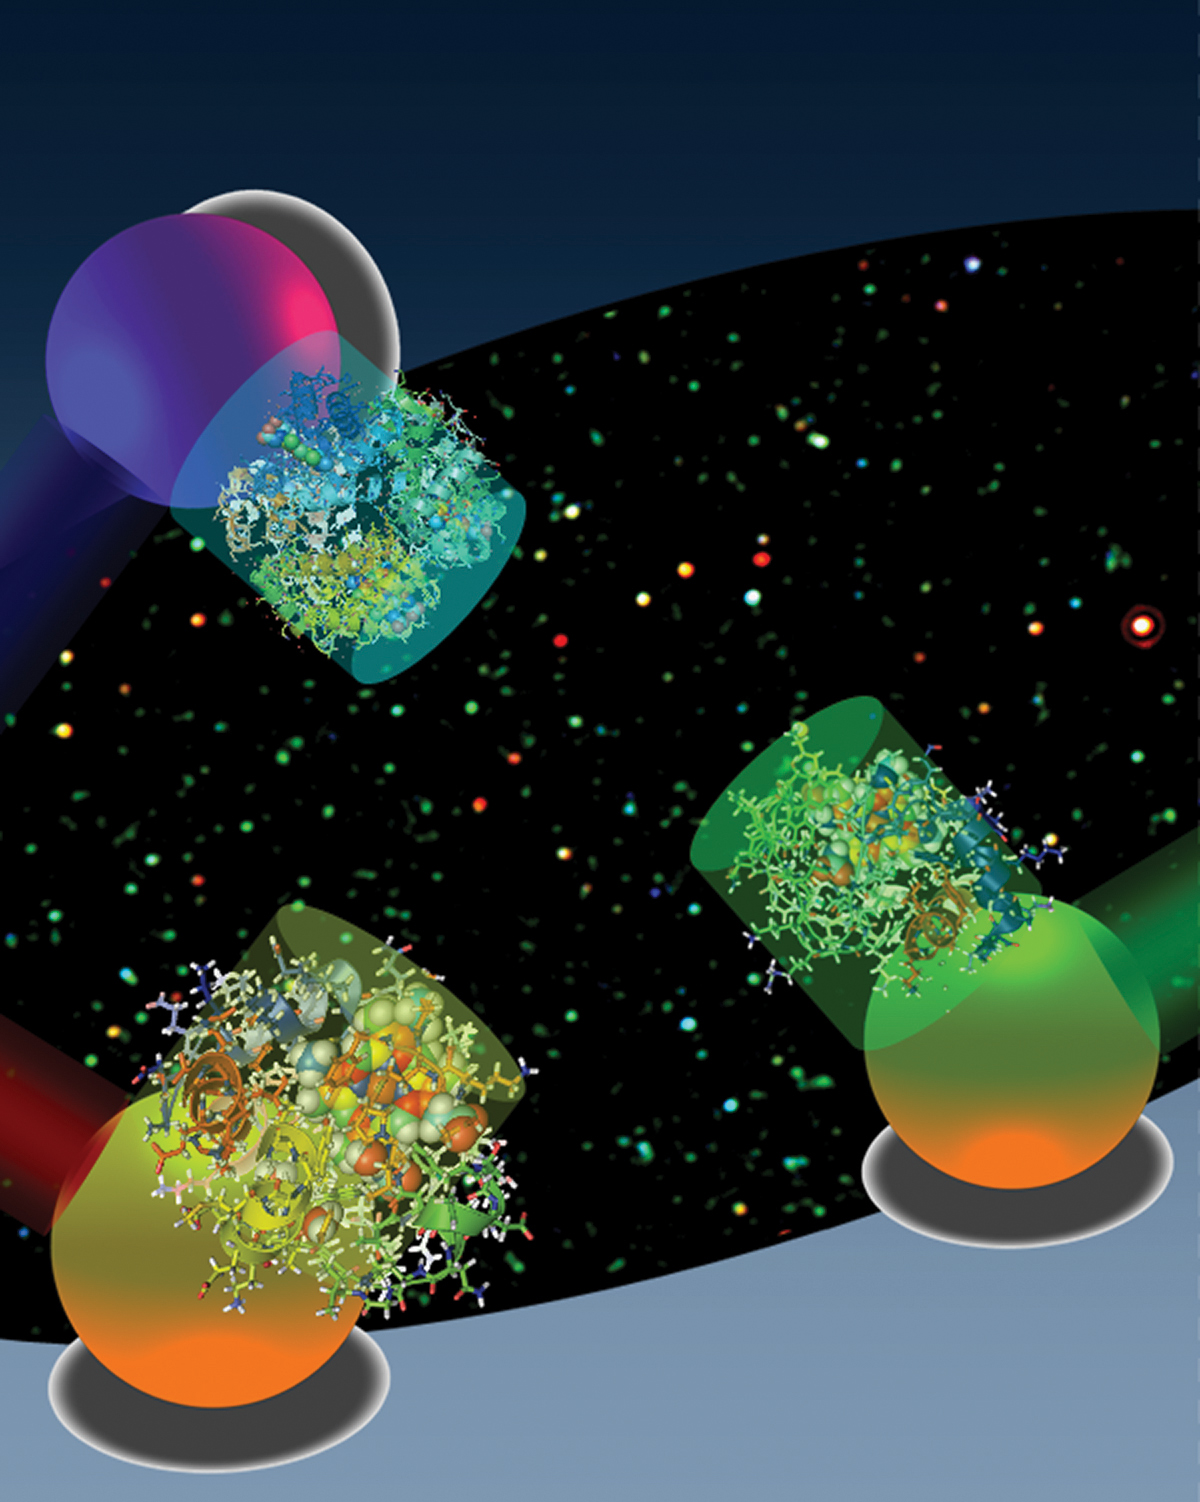 En fonction de la lumière absorbée par les nanoparticules d'or sphériques couplées à des molécules, on peut tracer le comportement de ces dernières. Crédit : Gang Logan Liu et Luke Lee, UC Berkeley